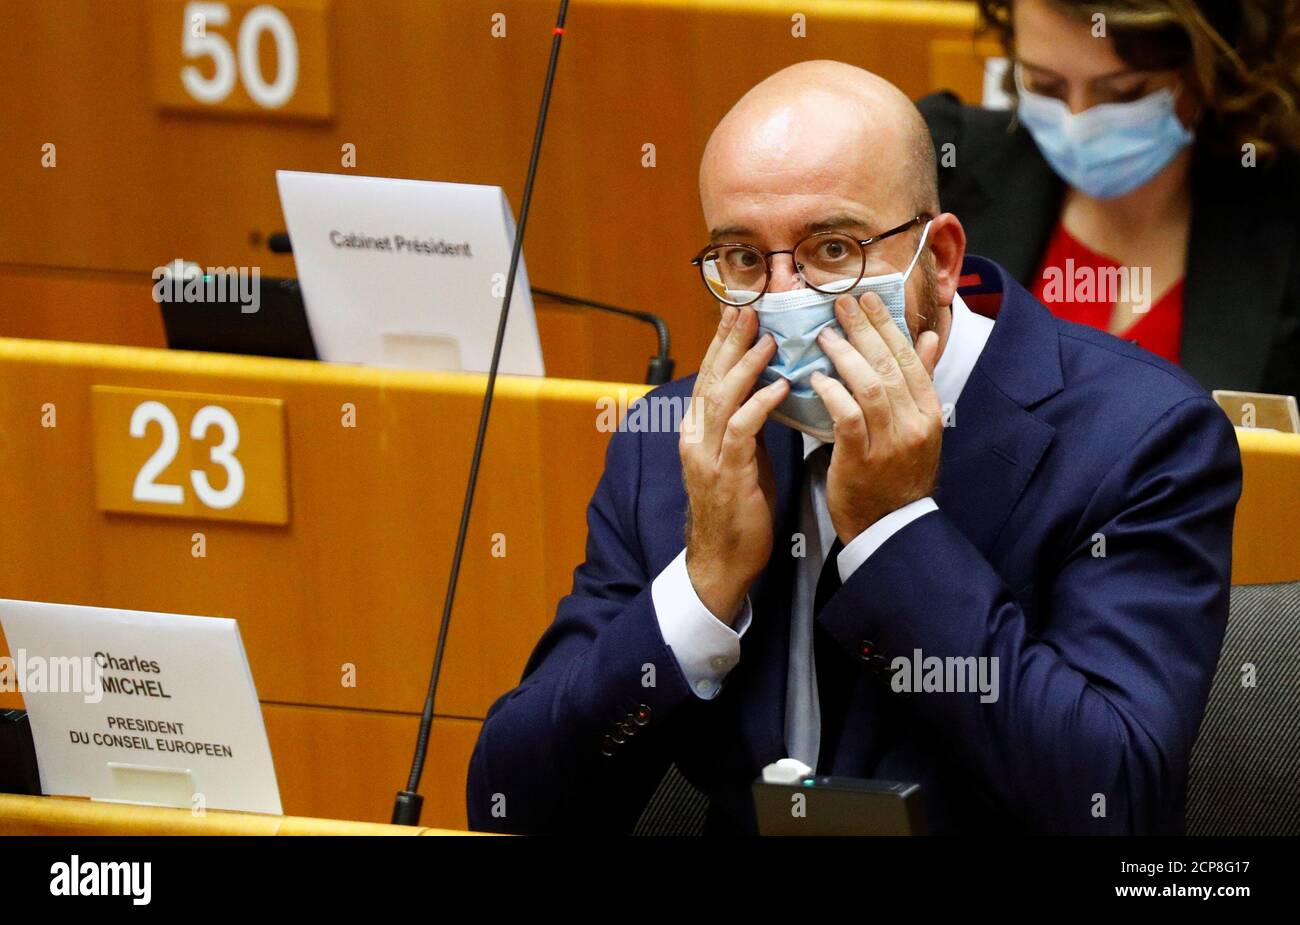 Le président du Conseil européen Charles Michel ajuste son masque lorsqu'il  assiste à un débat sur le financement de l'UE et la reprise économique avec  les législateurs de l'UE au Parlement européen